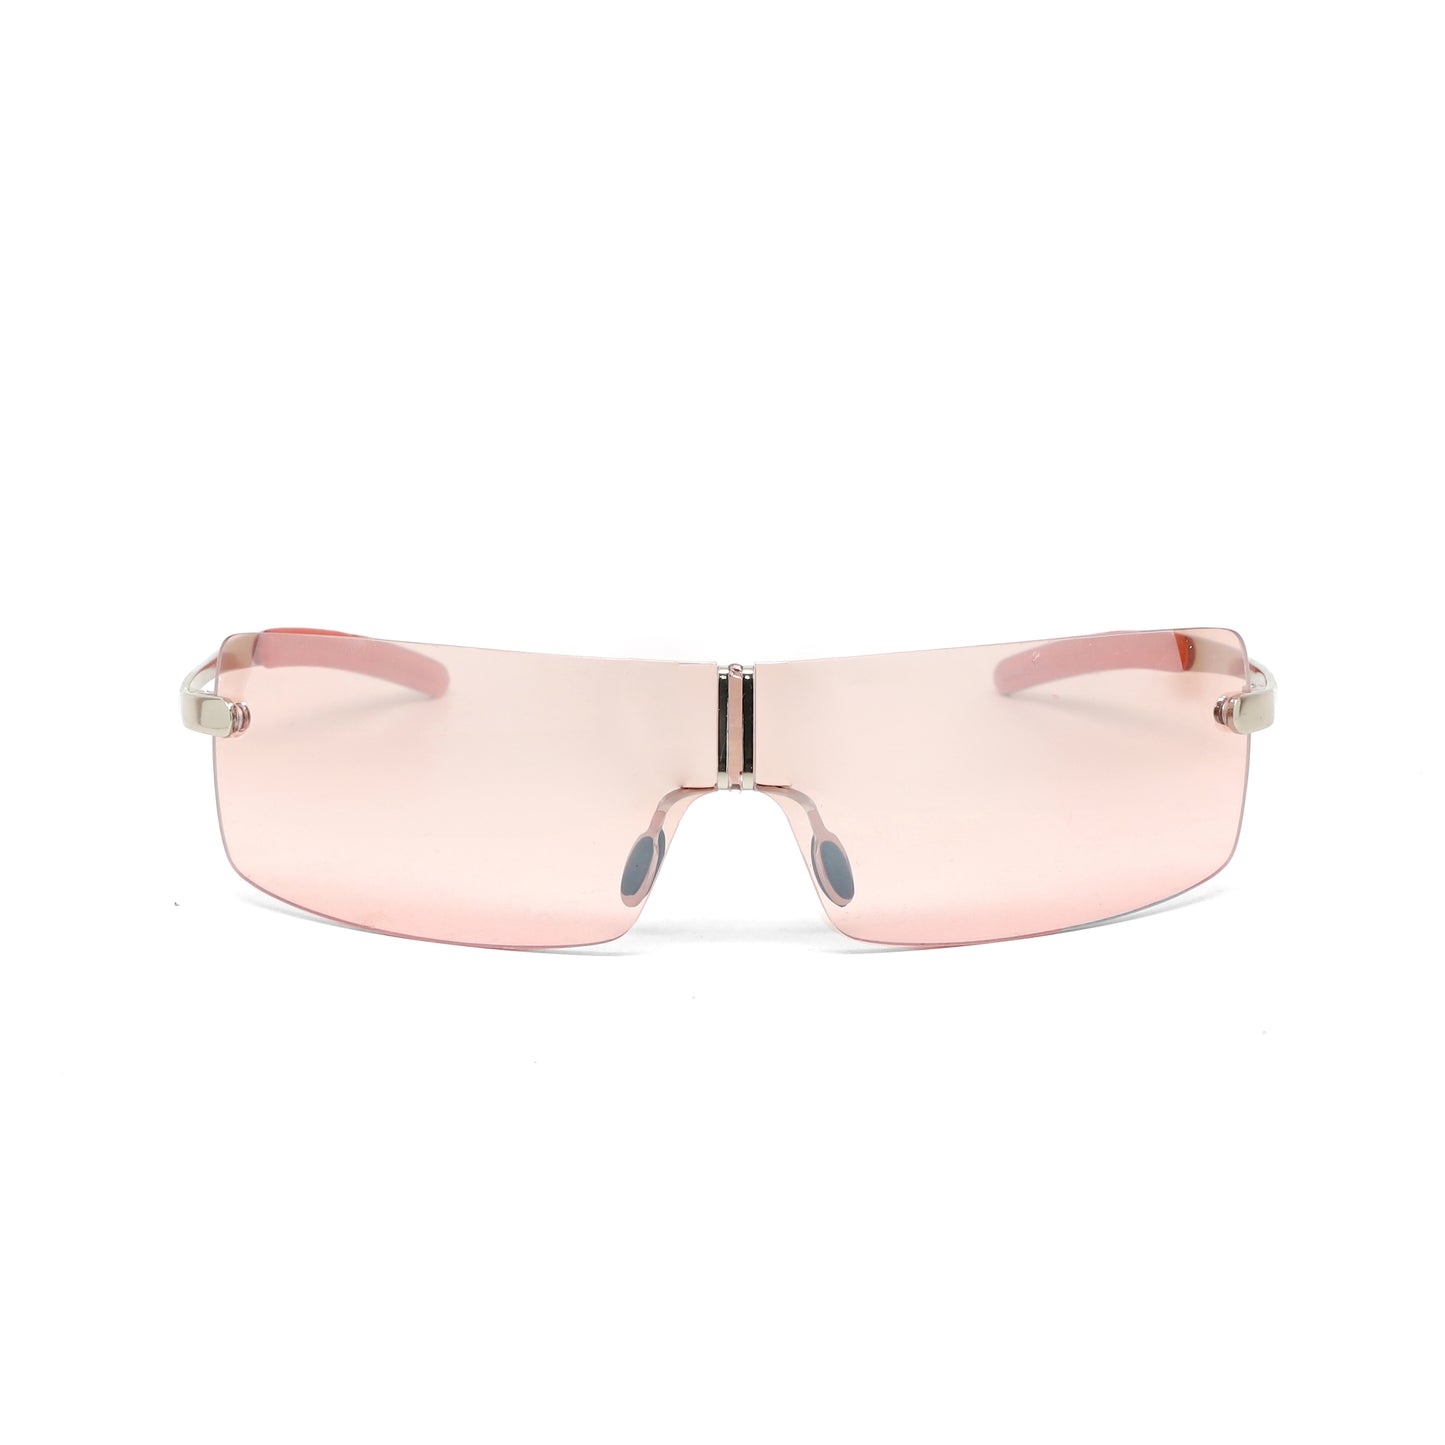 Deluxe Late 90s Vintage Frameless Wraparound Visor Sunglasses - Pink